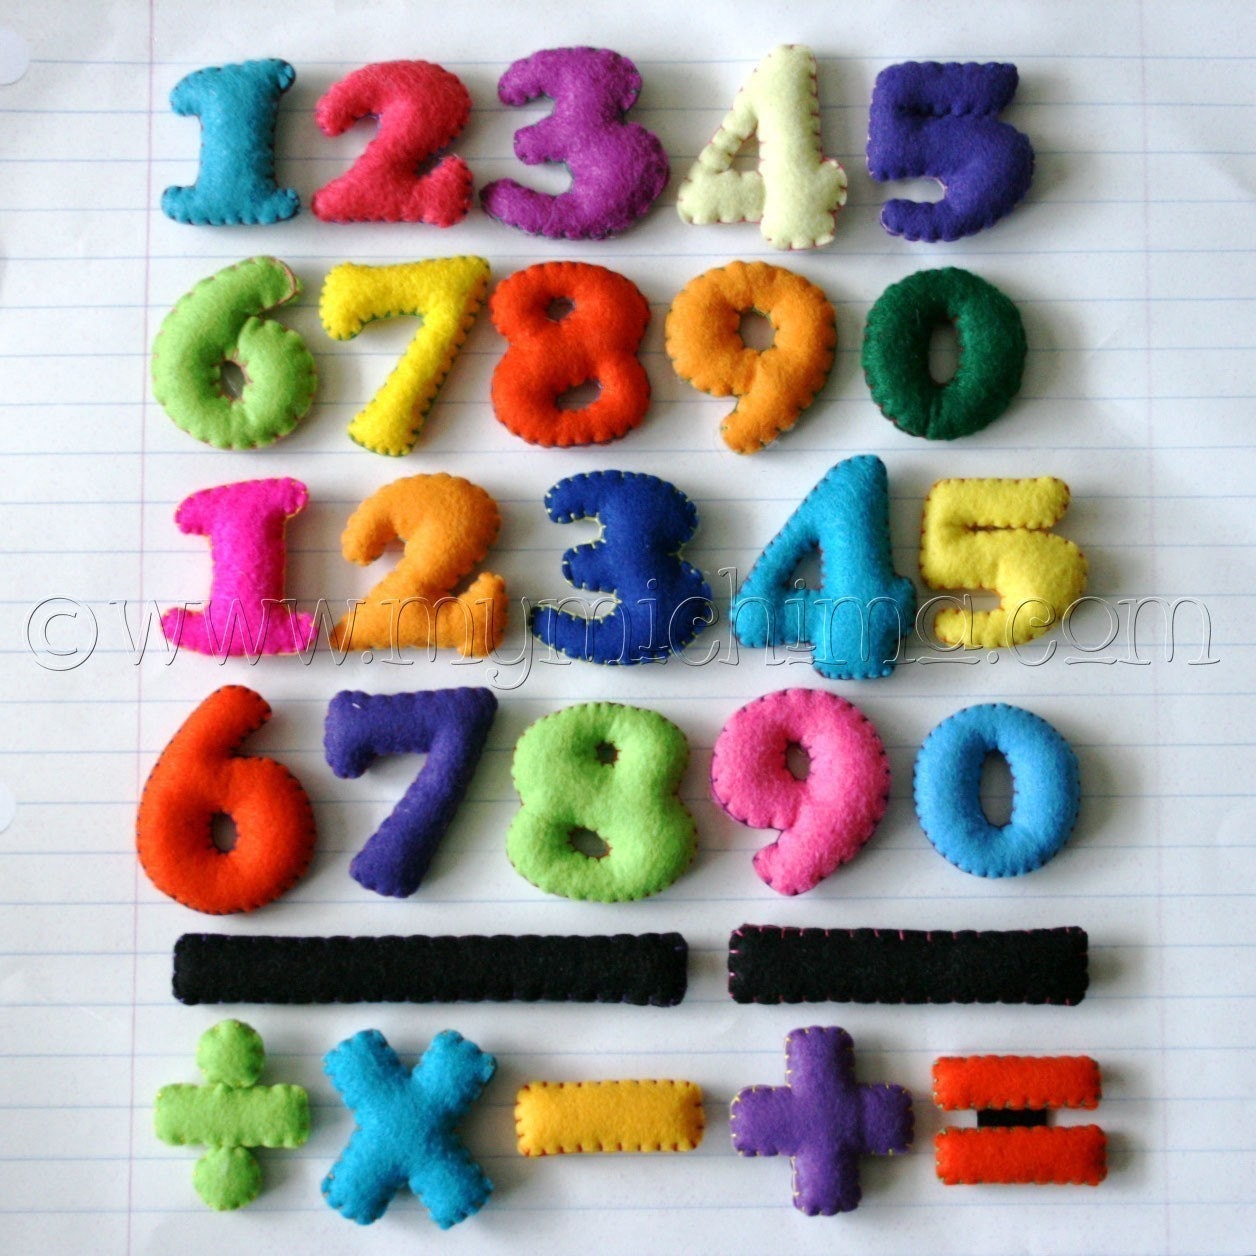 Magnetic Math Set - Stuffed Felt Numbers Magnet Set